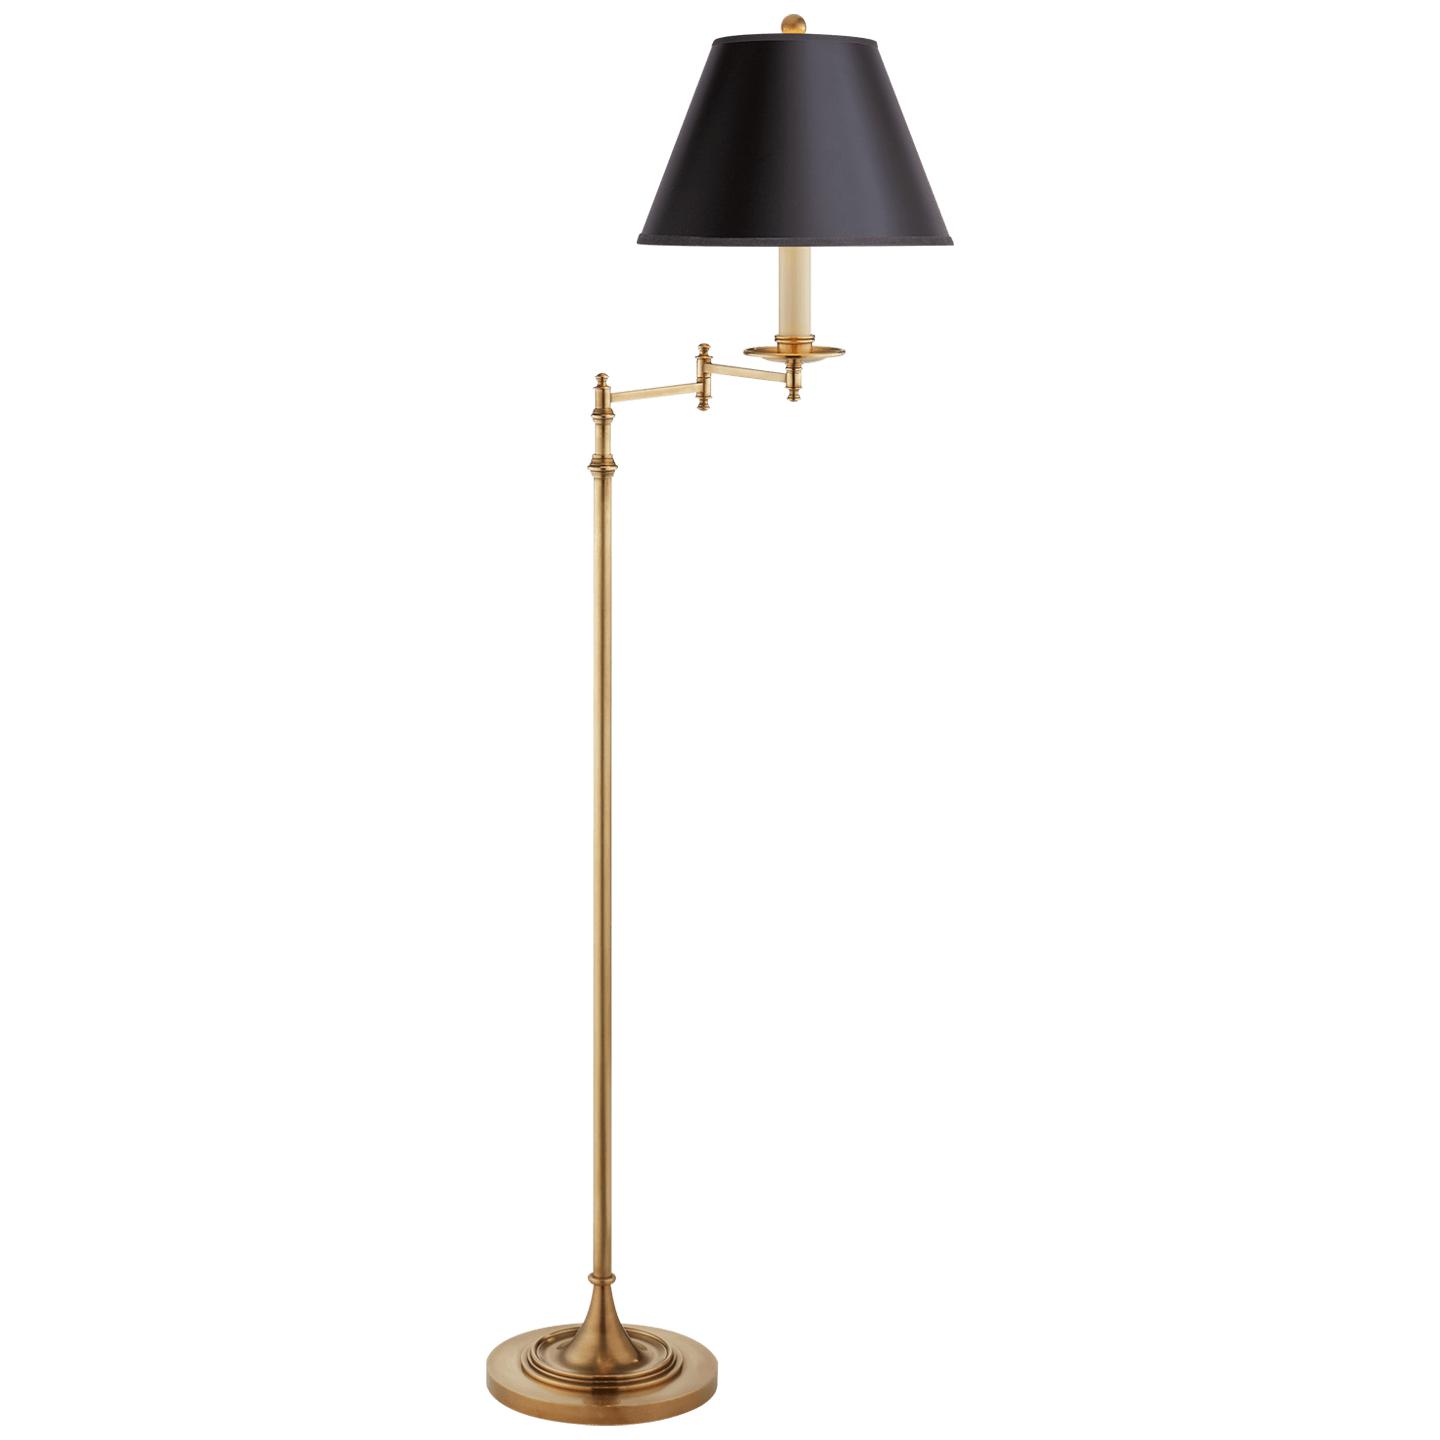 Купить Торшер Dorchester Swing Arm Floor Lamp в интернет-магазине roooms.ru